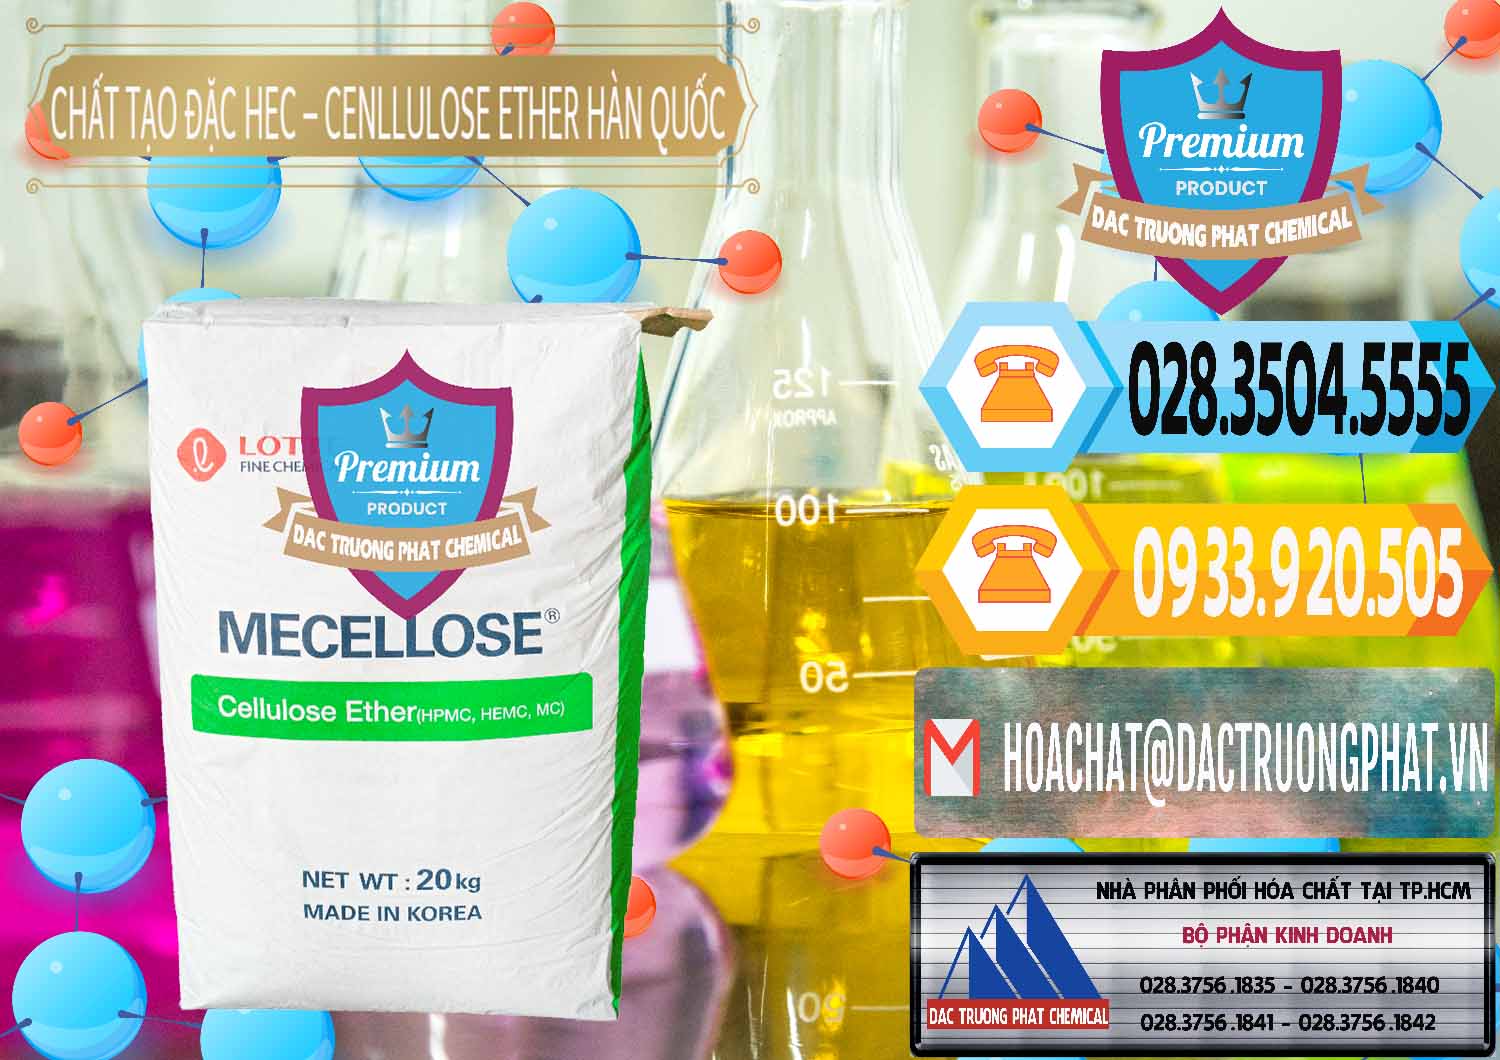 Nơi bán và phân phối Chất Tạo Đặc Hec Mecellose – Cenllulose Ether Lotte Hàn Quốc Korea - 0050 - Cty chuyên kinh doanh và phân phối hóa chất tại TP.HCM - hoachattayrua.net